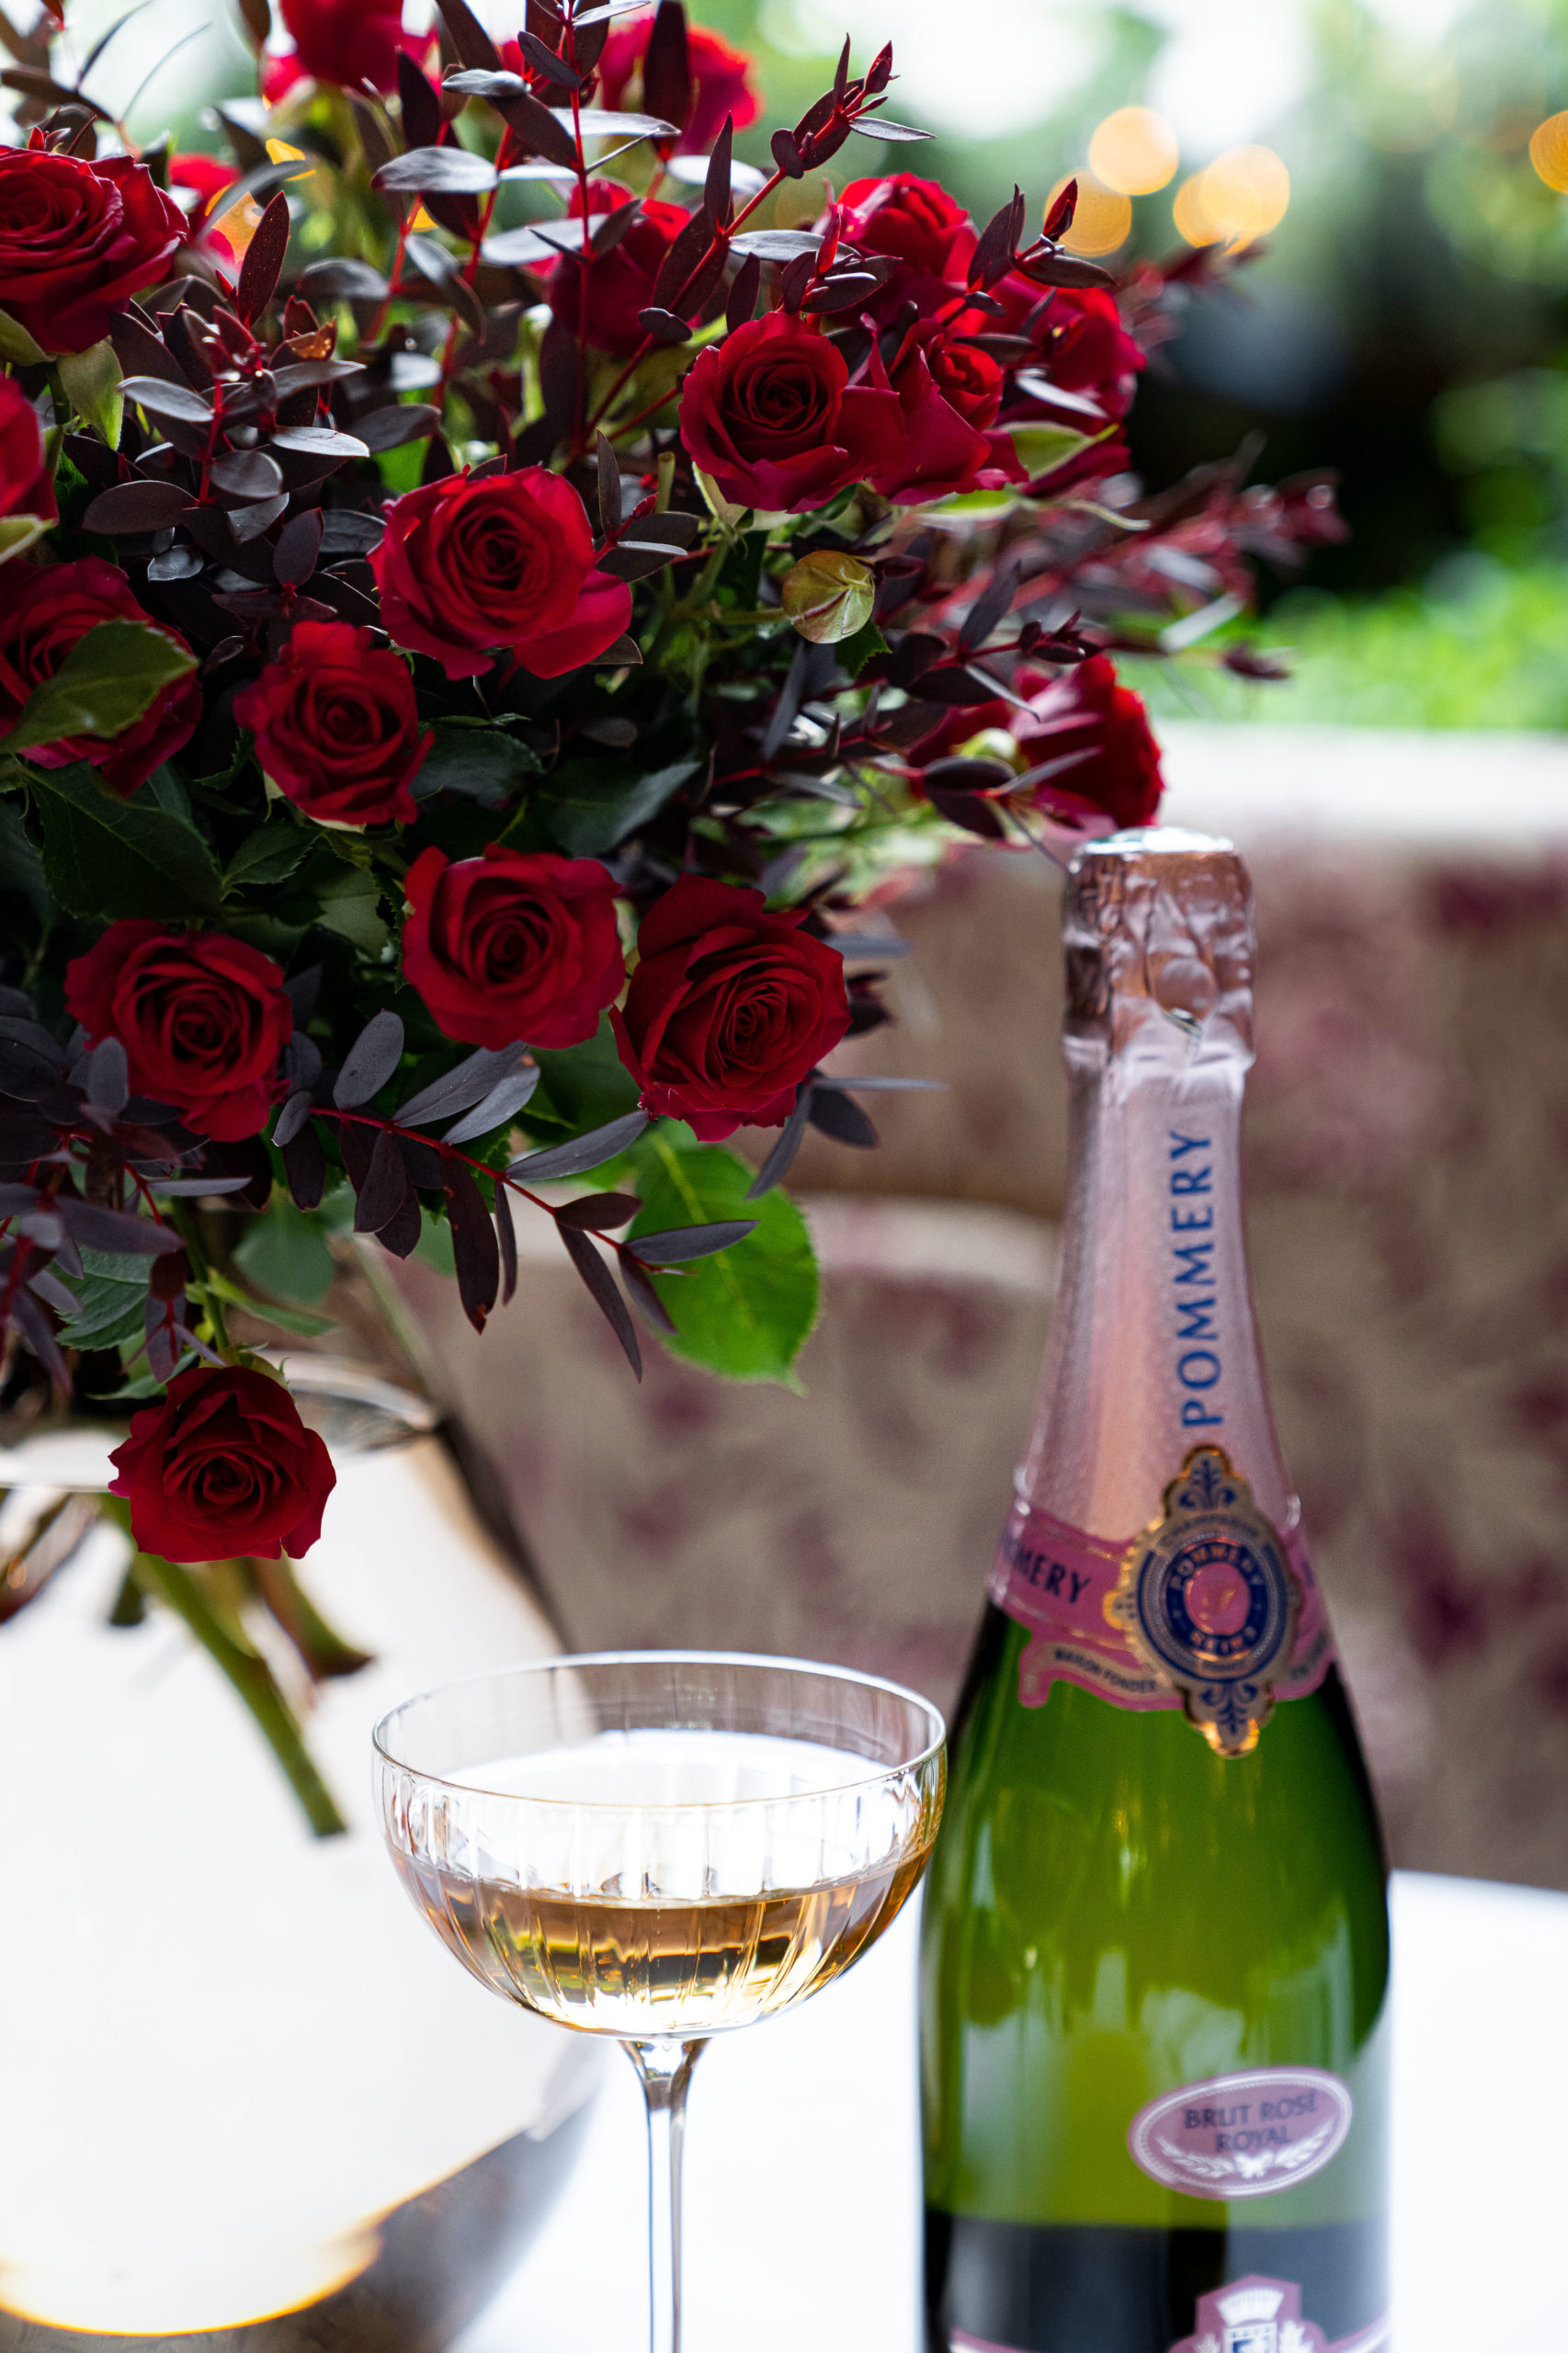 édition limitée Champagne Pommery x Maison Lucas Carton